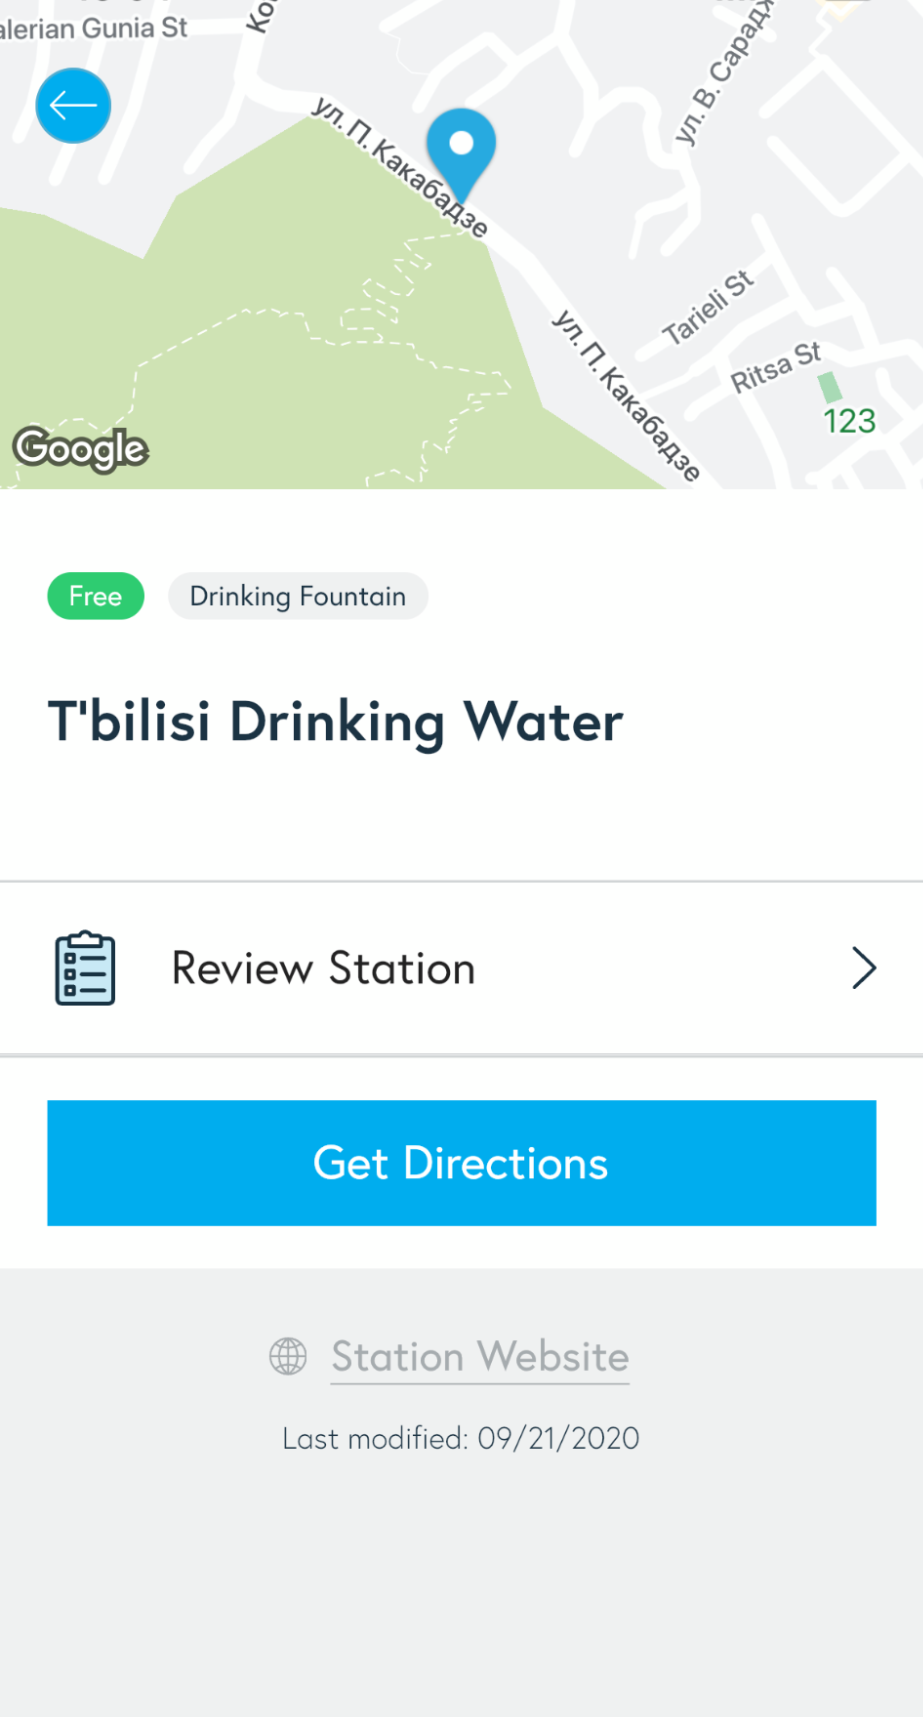 В Тбилиси бесплатная вода на каждом шагу. Места можно посмотреть на карте или списком